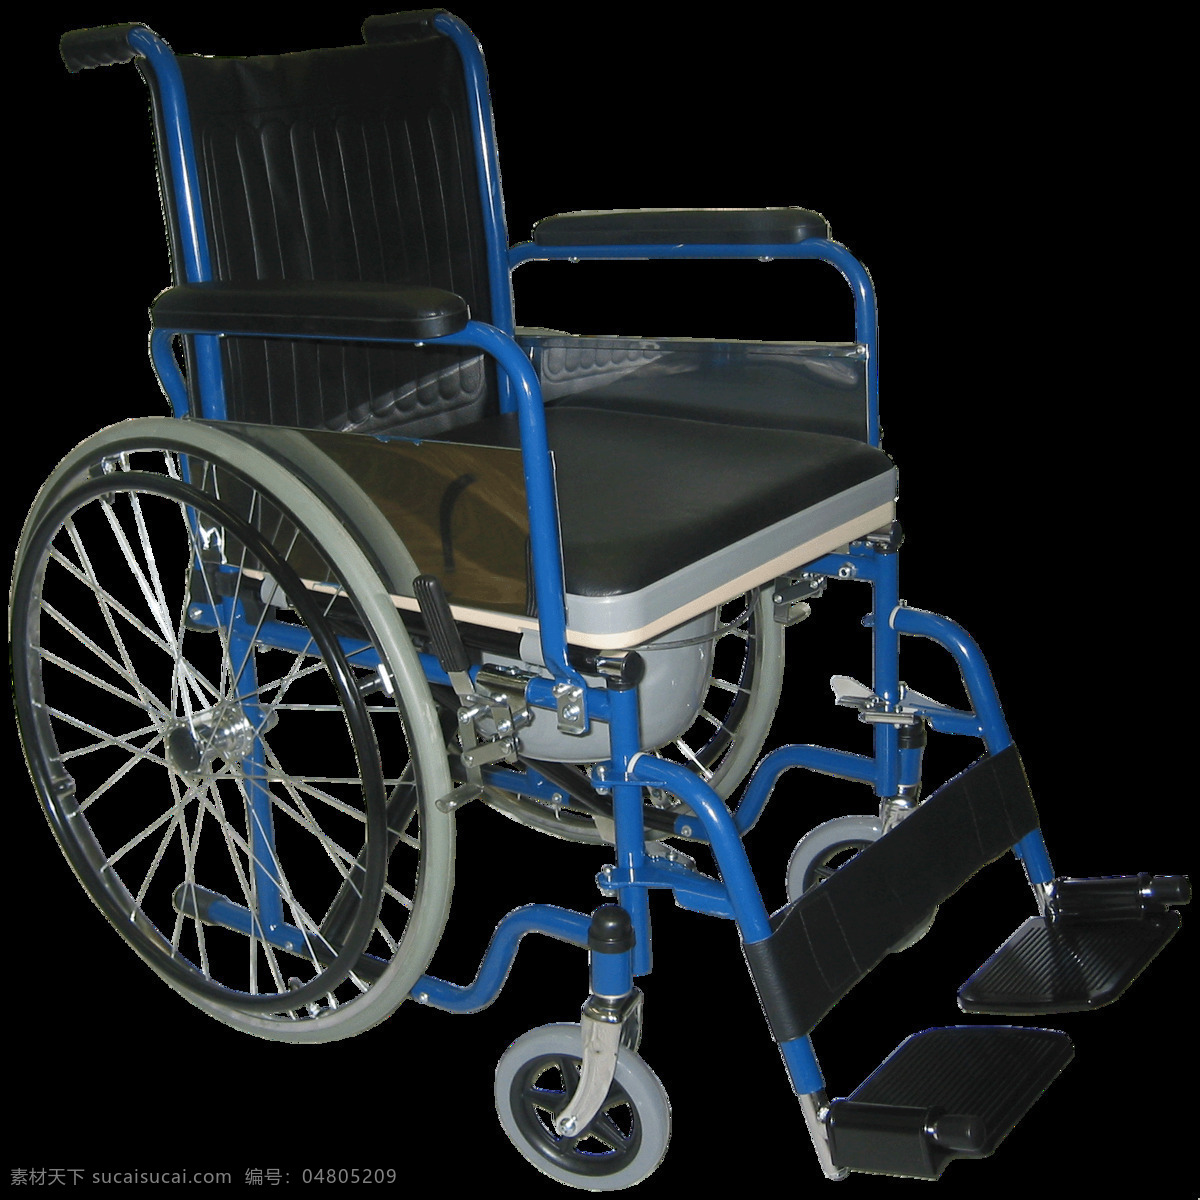 漂亮 轮椅 免 抠 透明 图 层 木轮椅 越野轮椅 小轮轮椅 手摇轮椅 轮椅轮子 车载轮椅 老年轮椅 竞速轮椅 轮椅设计 残疾轮椅 折叠轮椅 智能轮椅 医院轮椅 轮椅图片